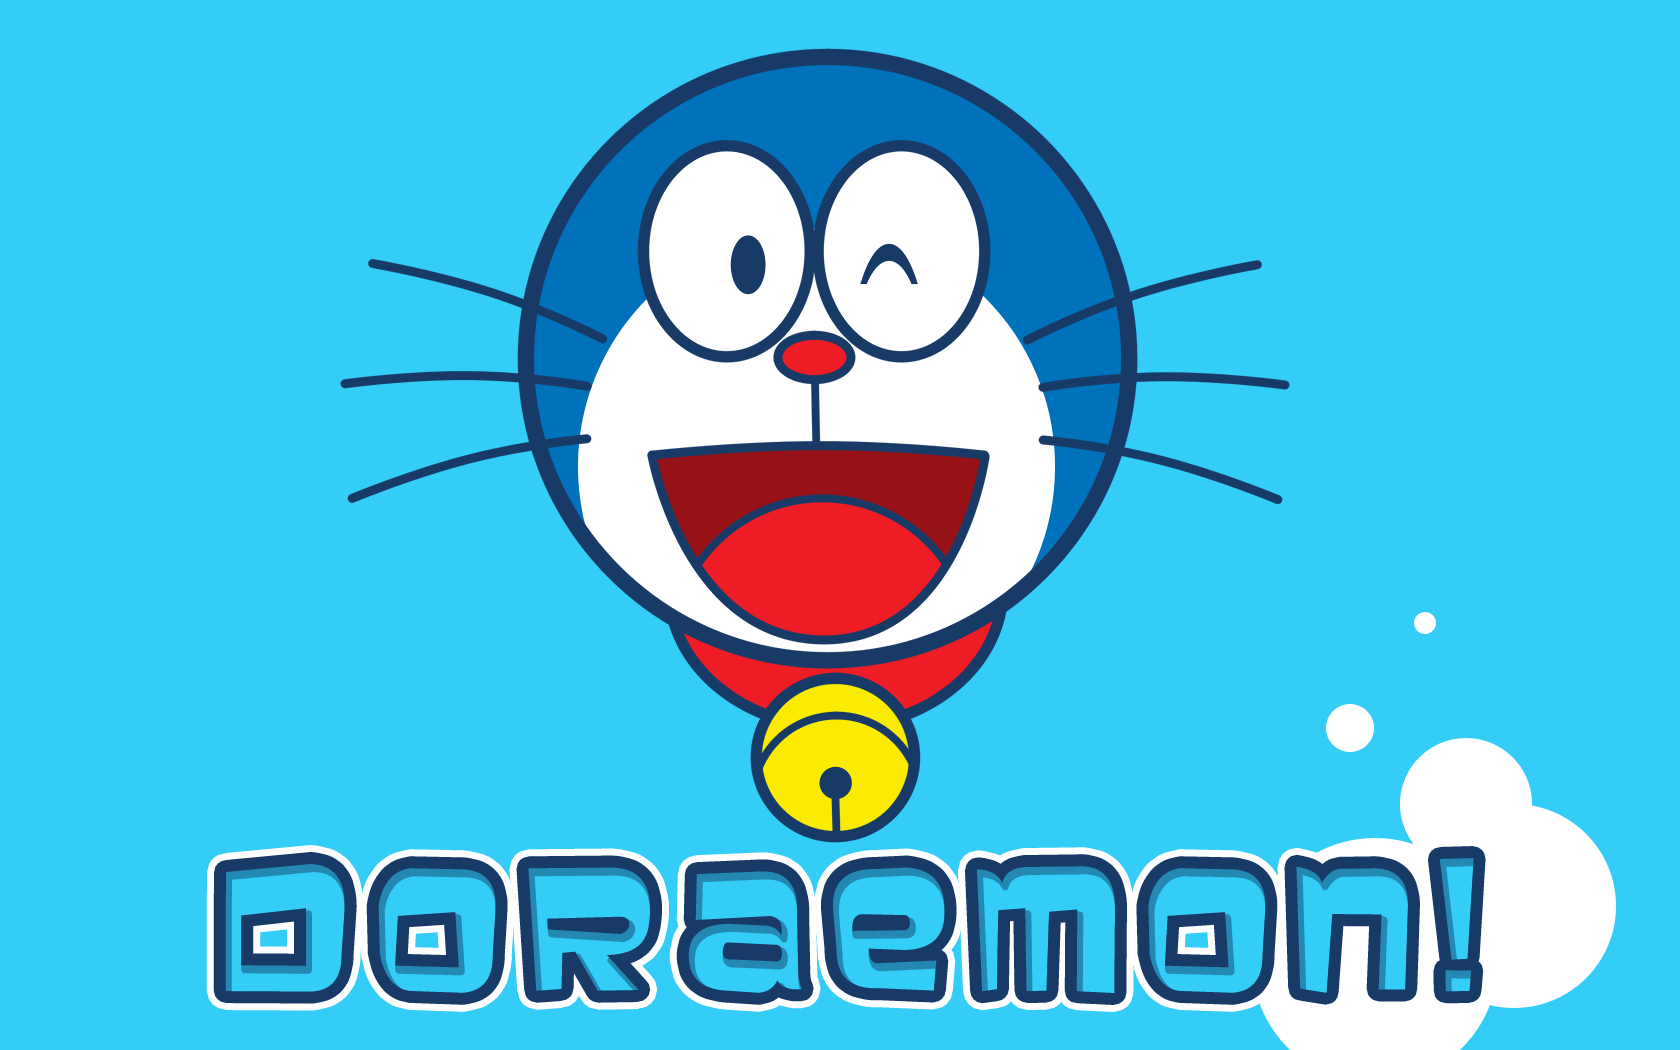 Doraemon Wallpaper For Iphone Wallpapersafari Gambartopcom